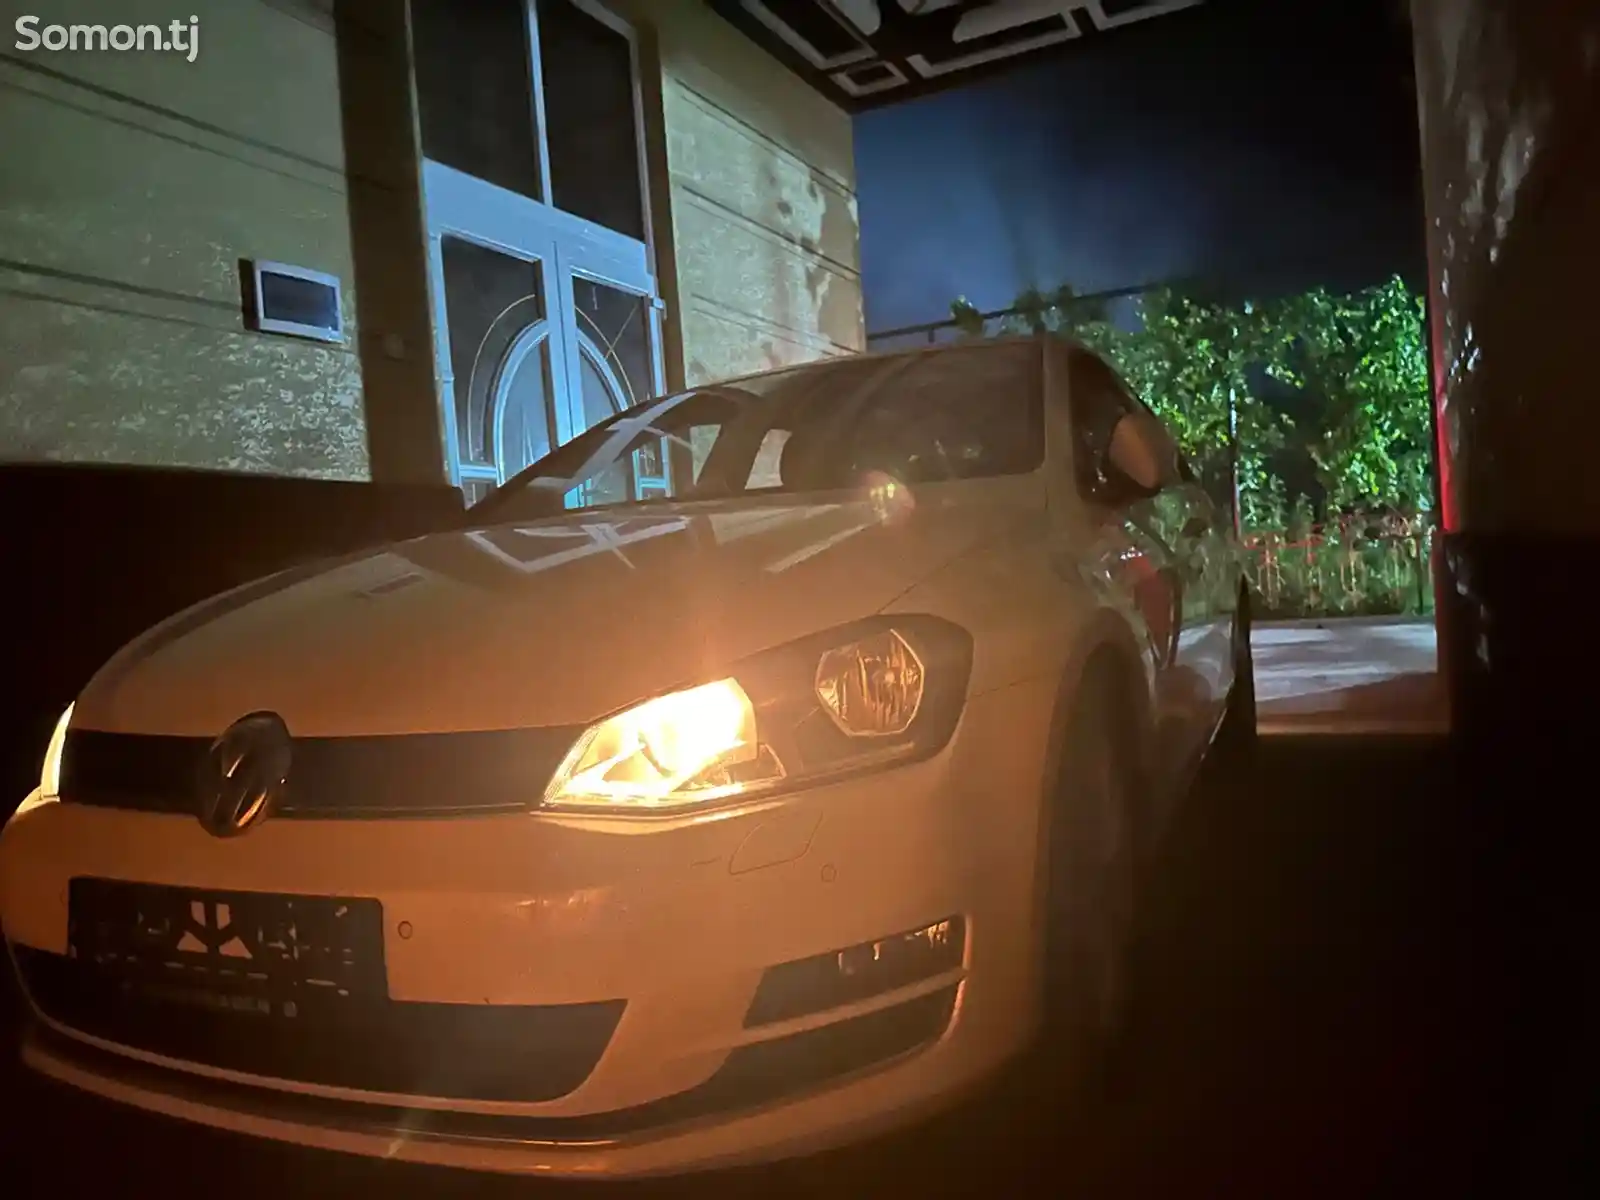 Volkswagen Golf, 2014-1